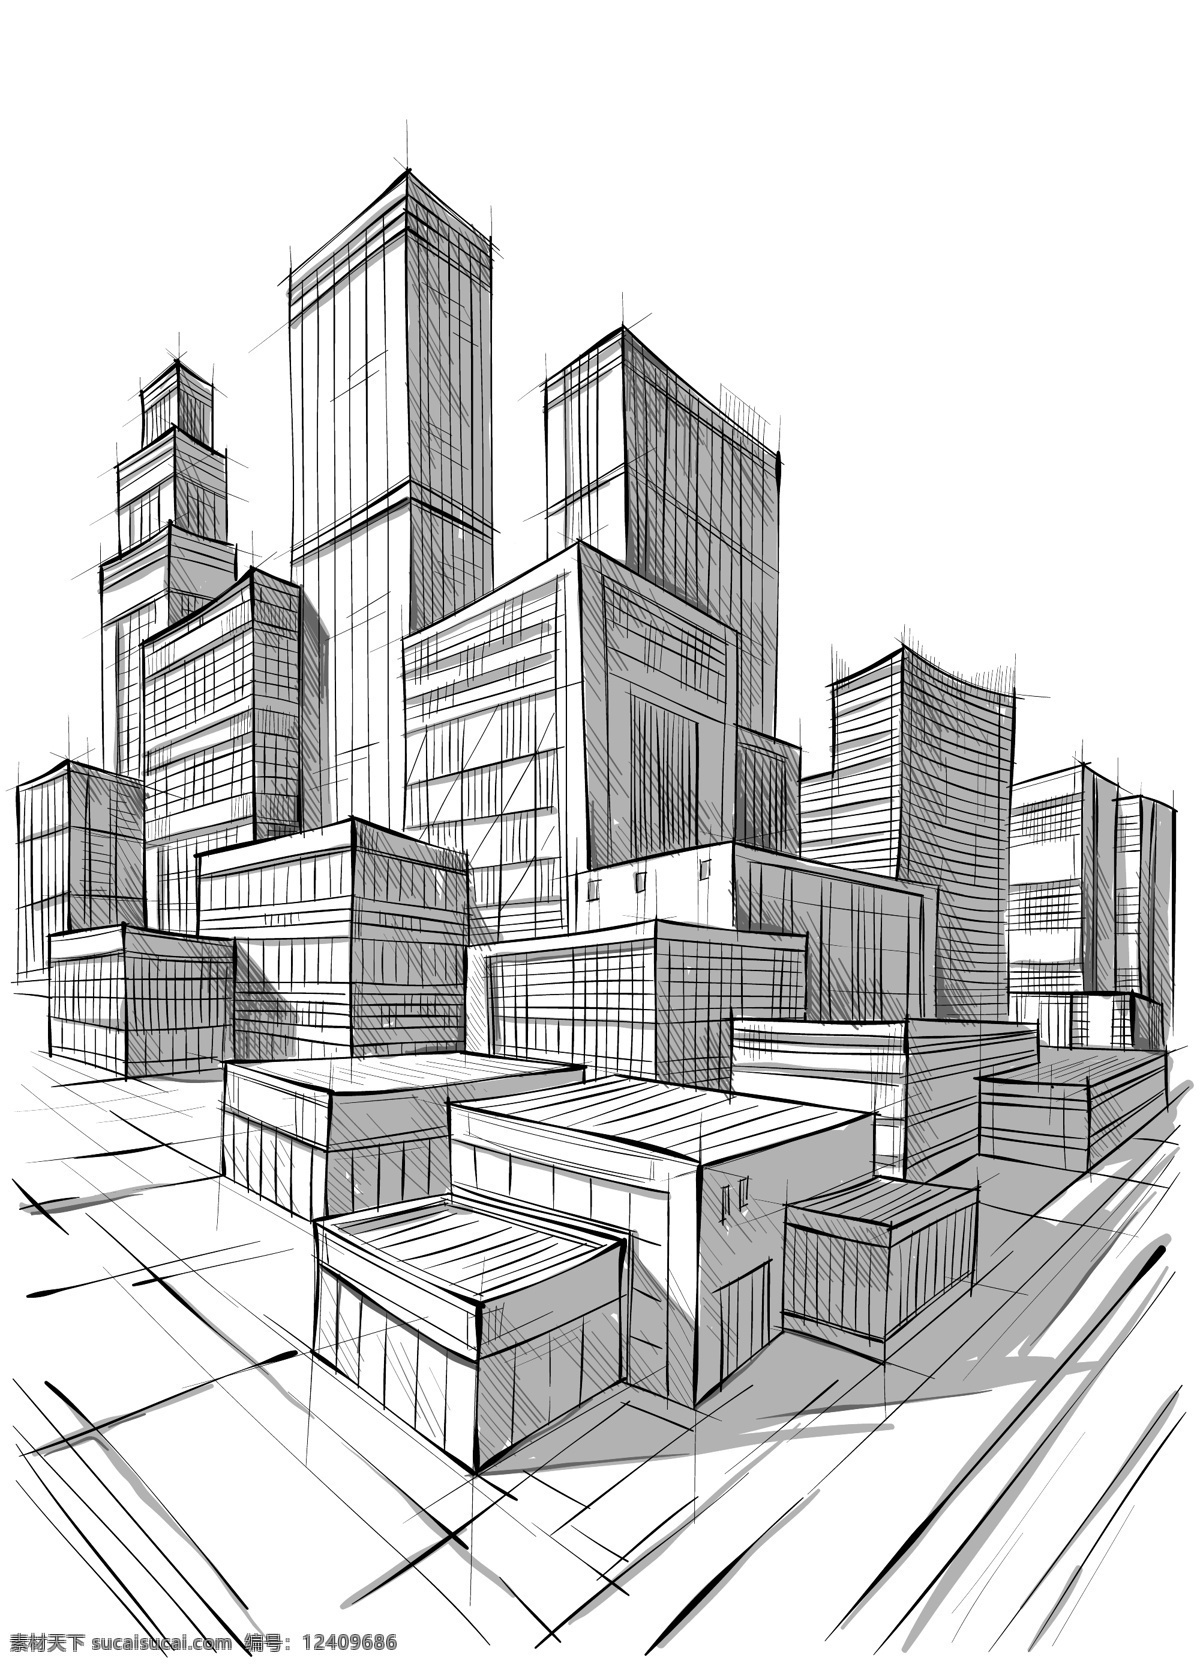 素描城市建筑 素描 高楼 大厦 建筑群 住宅 城市 都市 建筑 手绘 背景 矢量 城市建筑主题 城市建筑 建筑家居